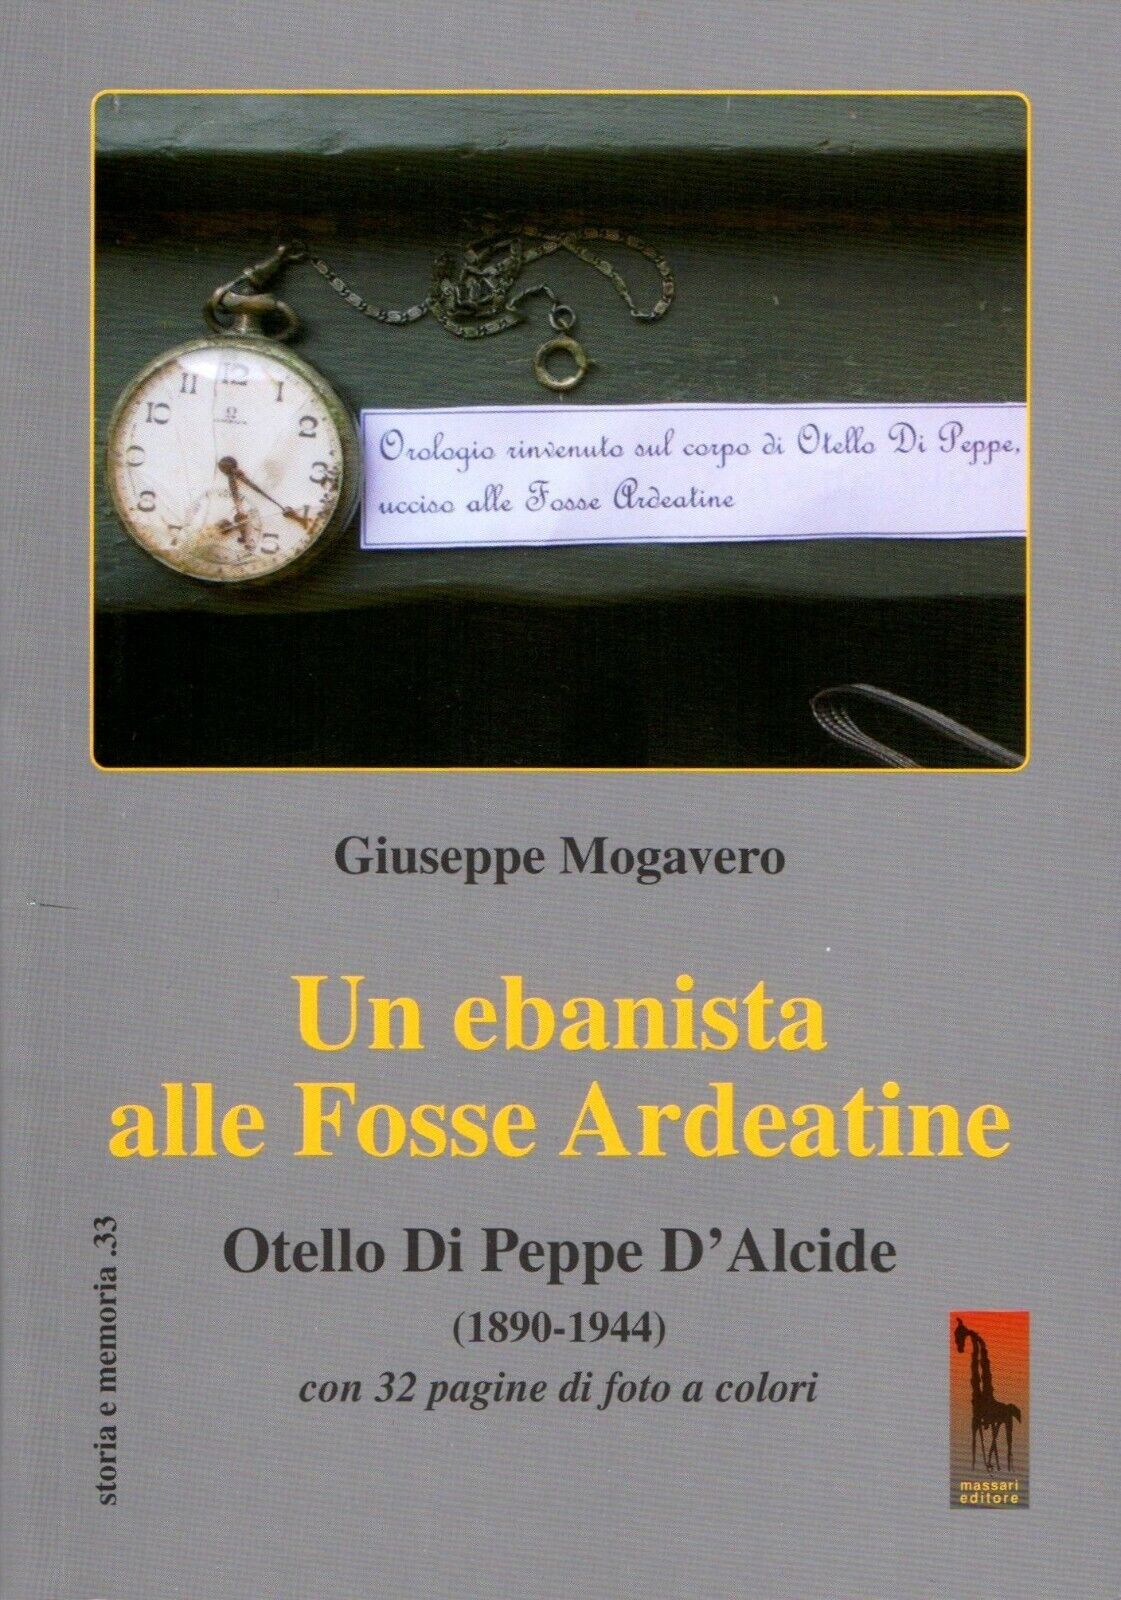 Un ebanista alle Fosse Ardeatine. Otello di Peppe d'Alcide (1890-1944) di Giusep